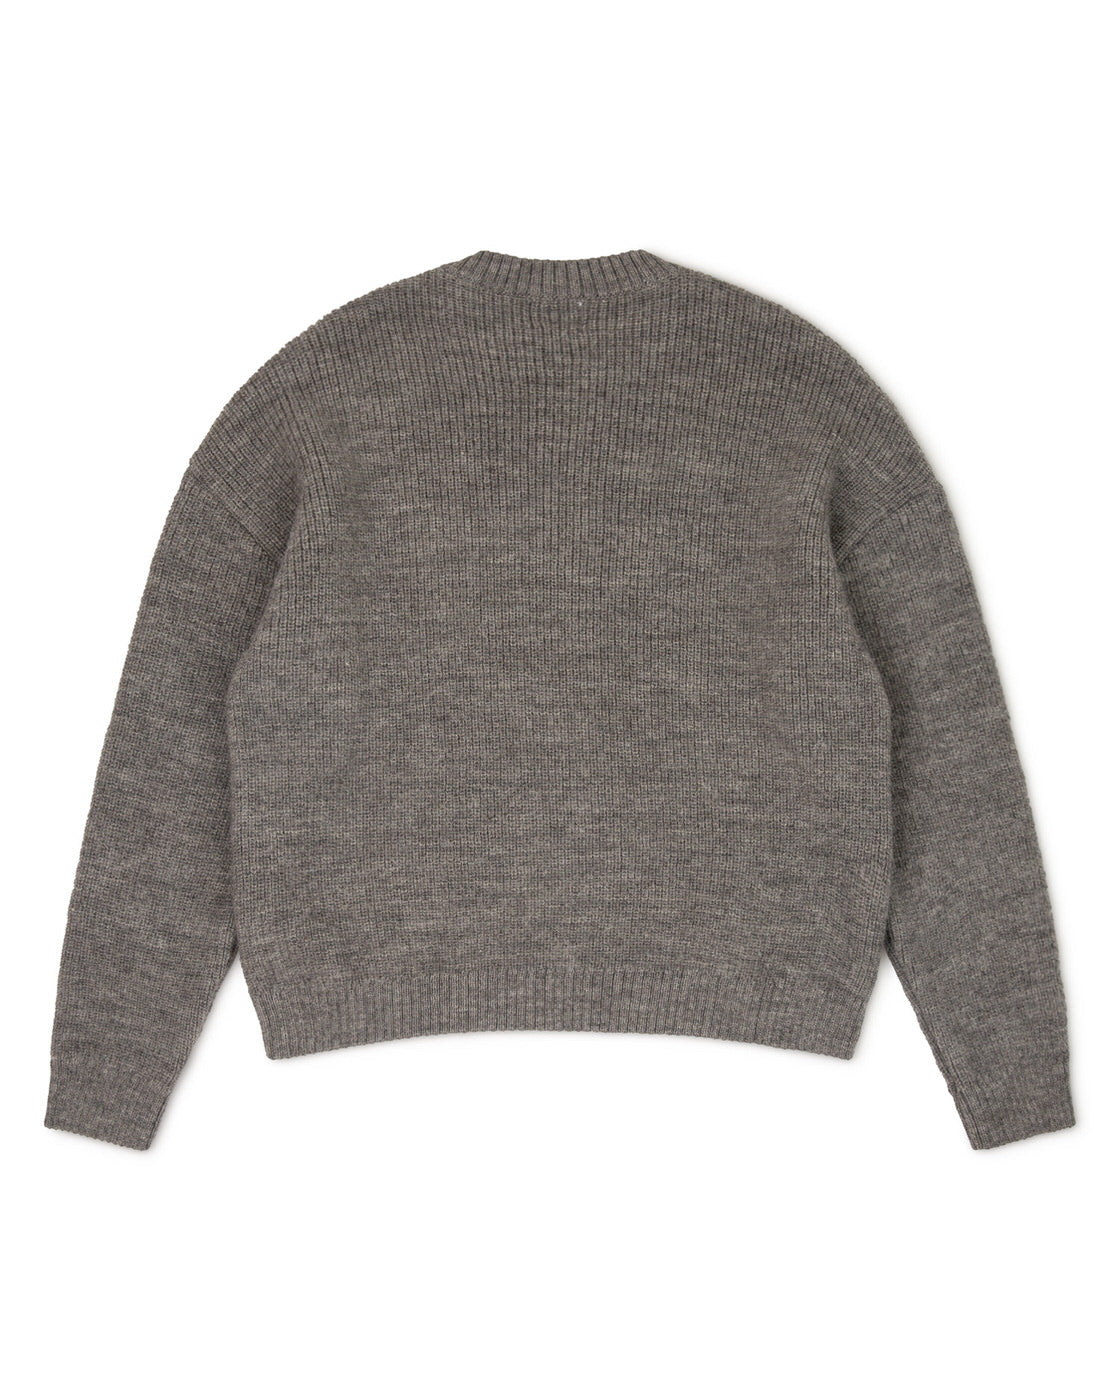 Gray, knitted sweater basalt made of merino and alpaca yarn from Matona